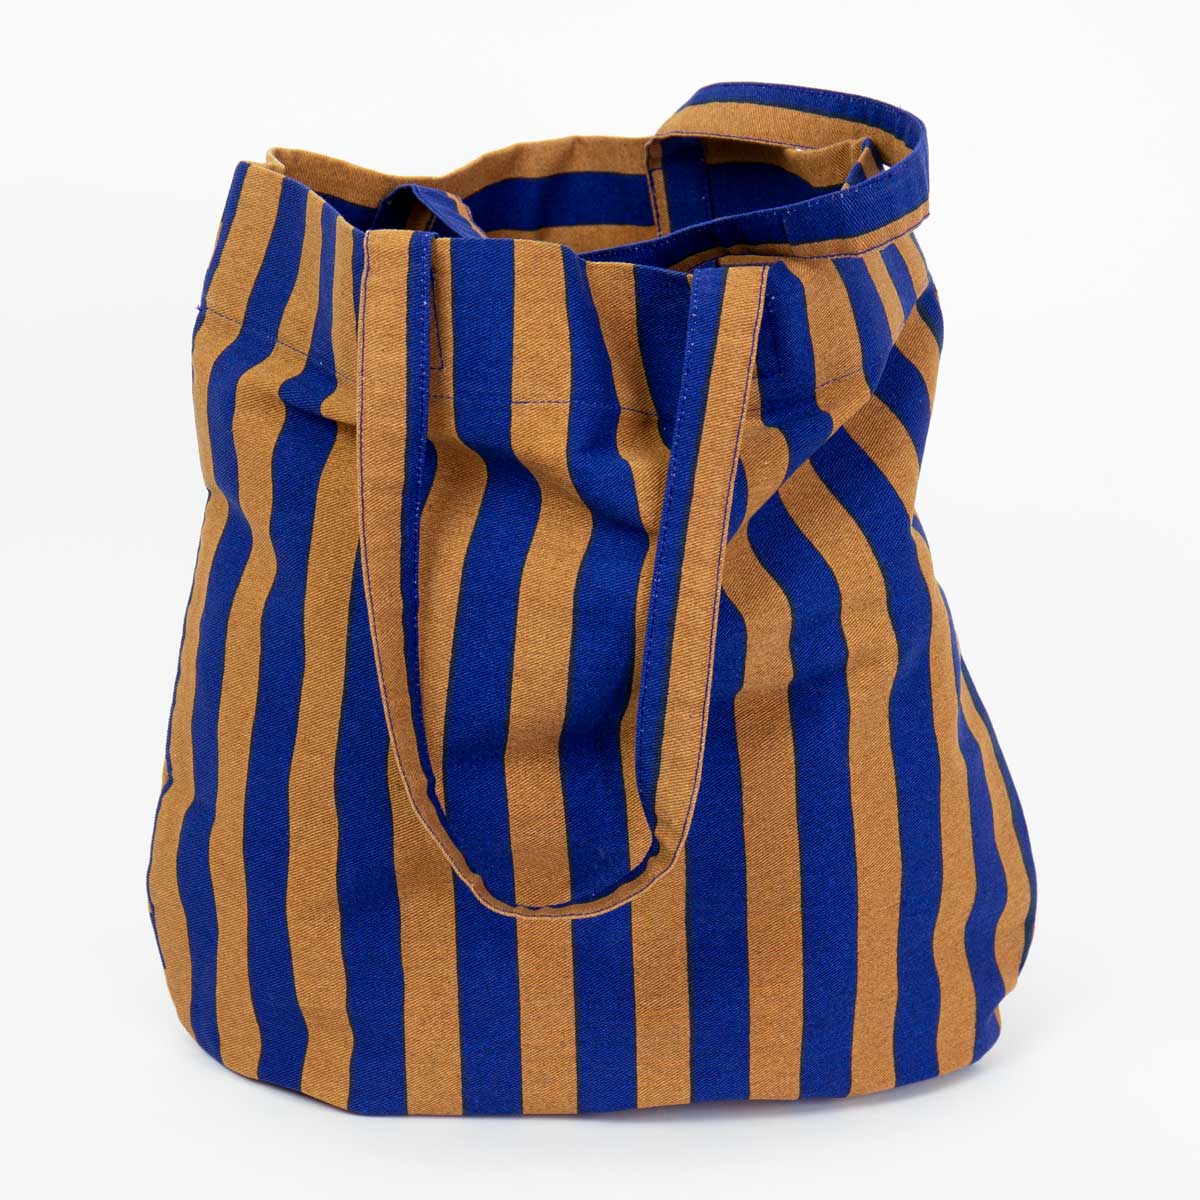 RANDA Bag, blue/brown